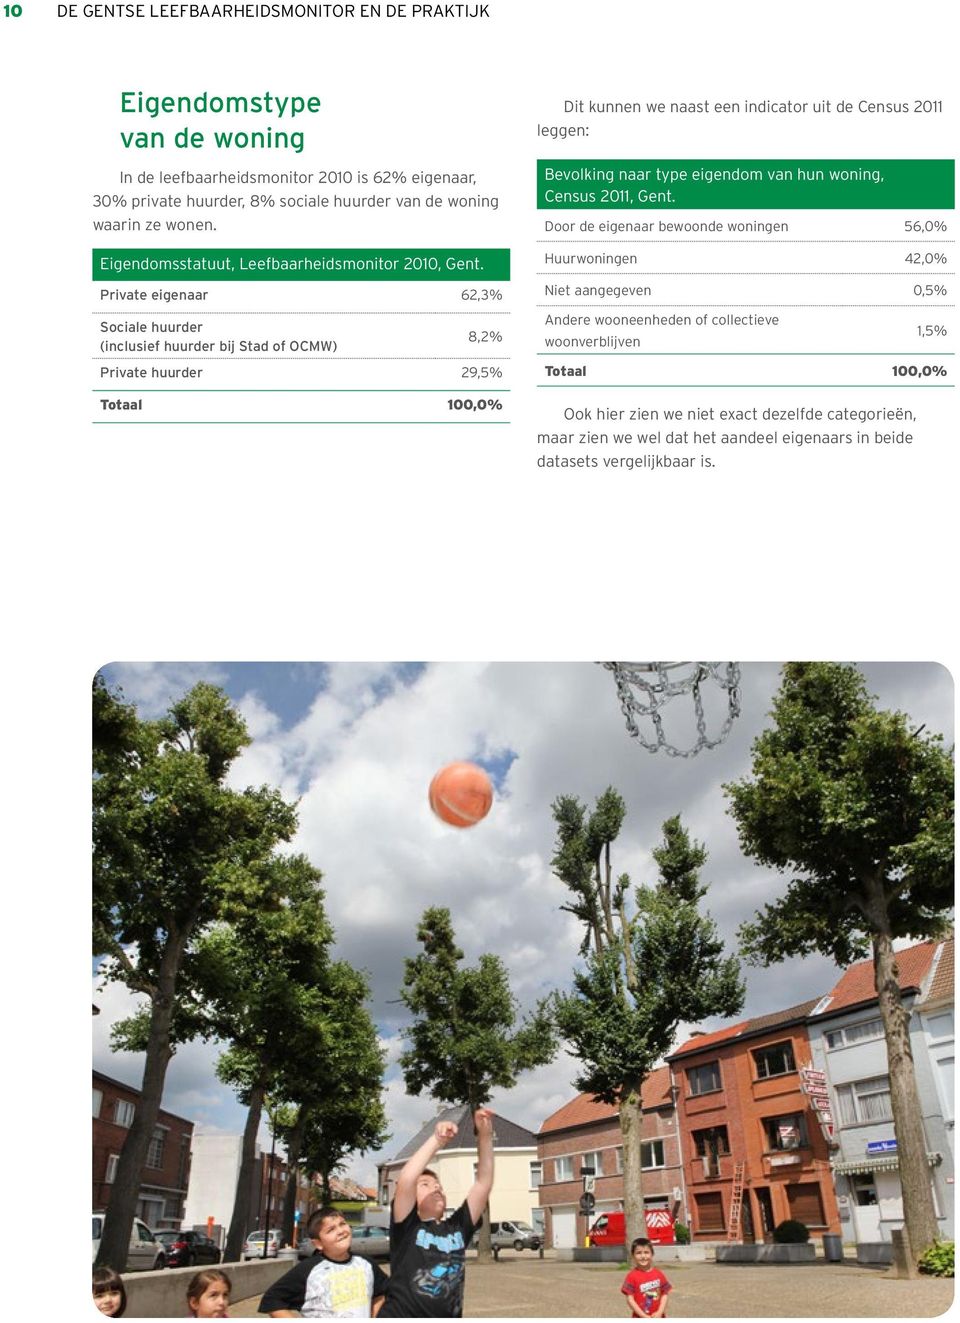 Private eigenaar 62,3% Dit kunnen we naast een indicator uit de Census 2011 leggen: Bevolking naar type eigendom van hun woning, Census 2011, Gent.